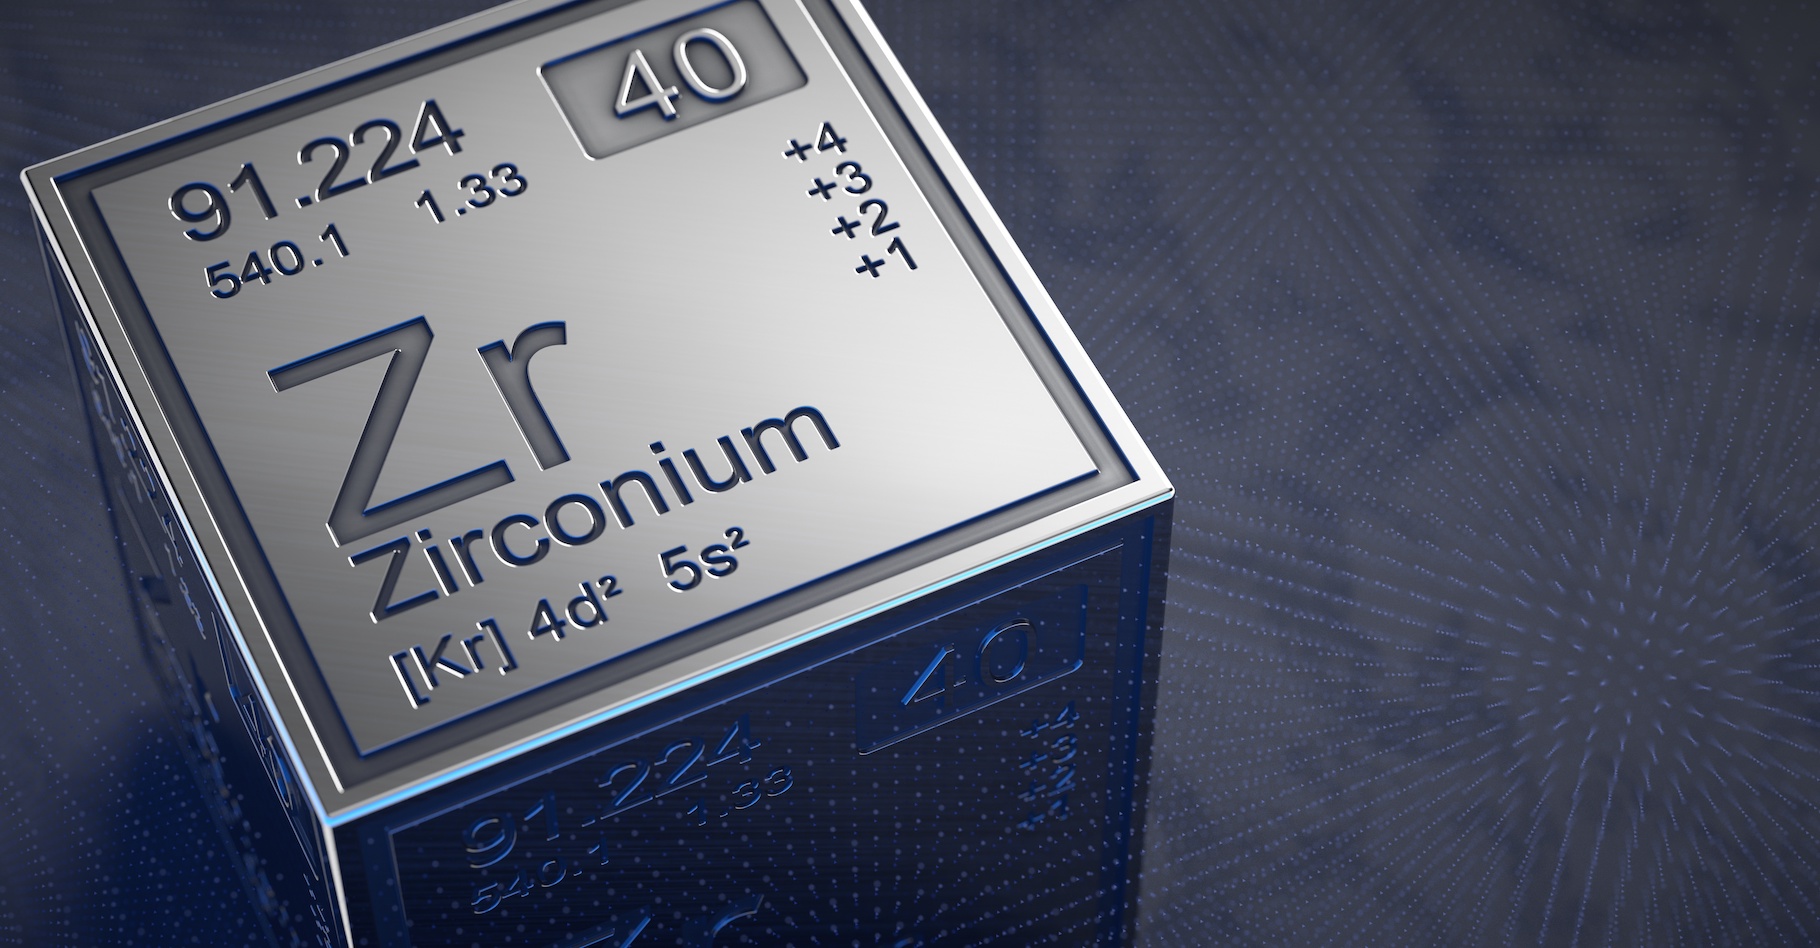 Des chercheurs montrent que le noyau du zirconium-80 (80Zr) est plus léger qu’ils ne le pensaient. © Negro Elkha, Adobe Stock